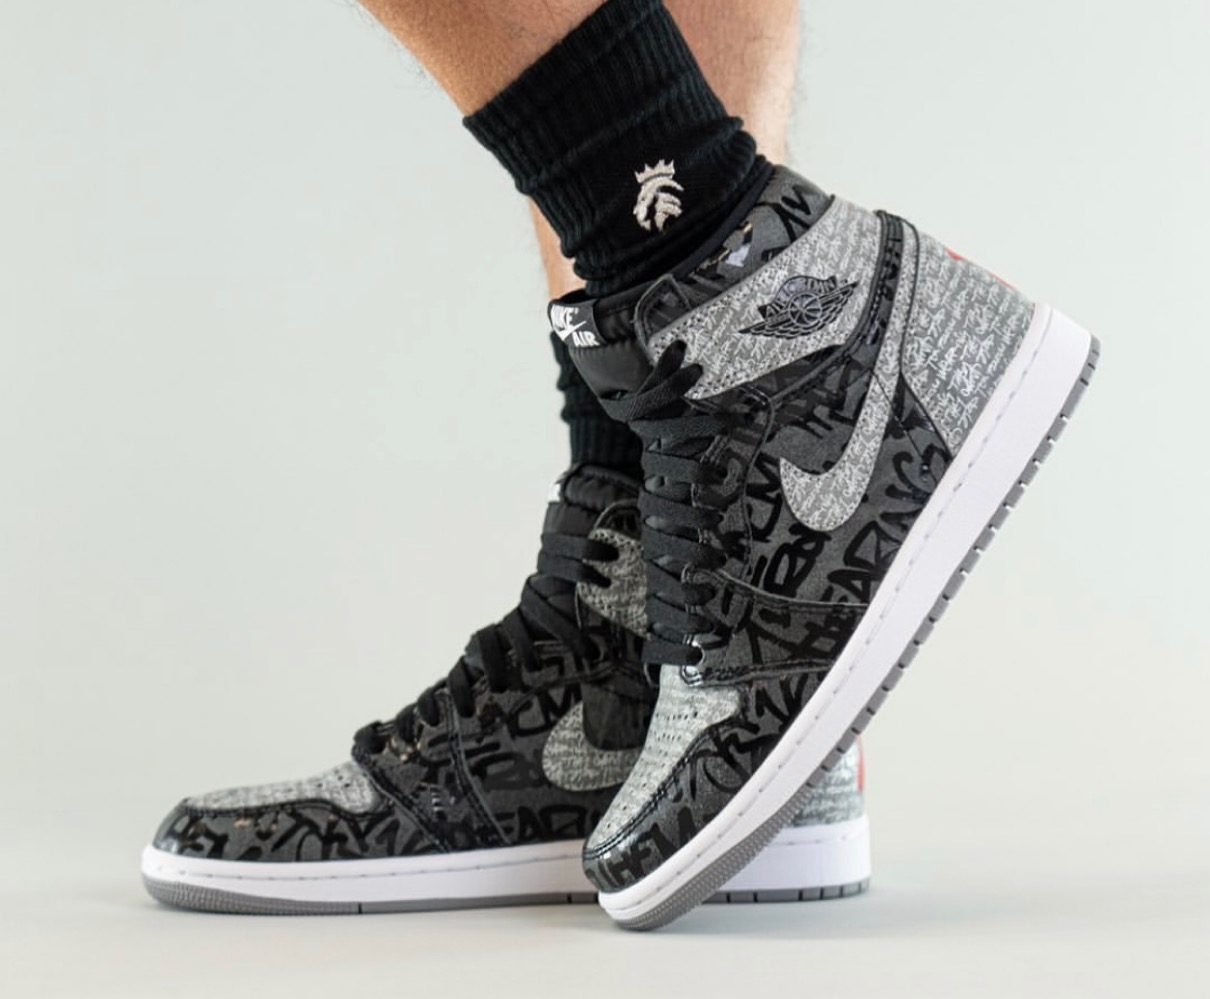 Nike】Air Jordan 1 Retro High OG “Rebellionaire”が国内3月12日に